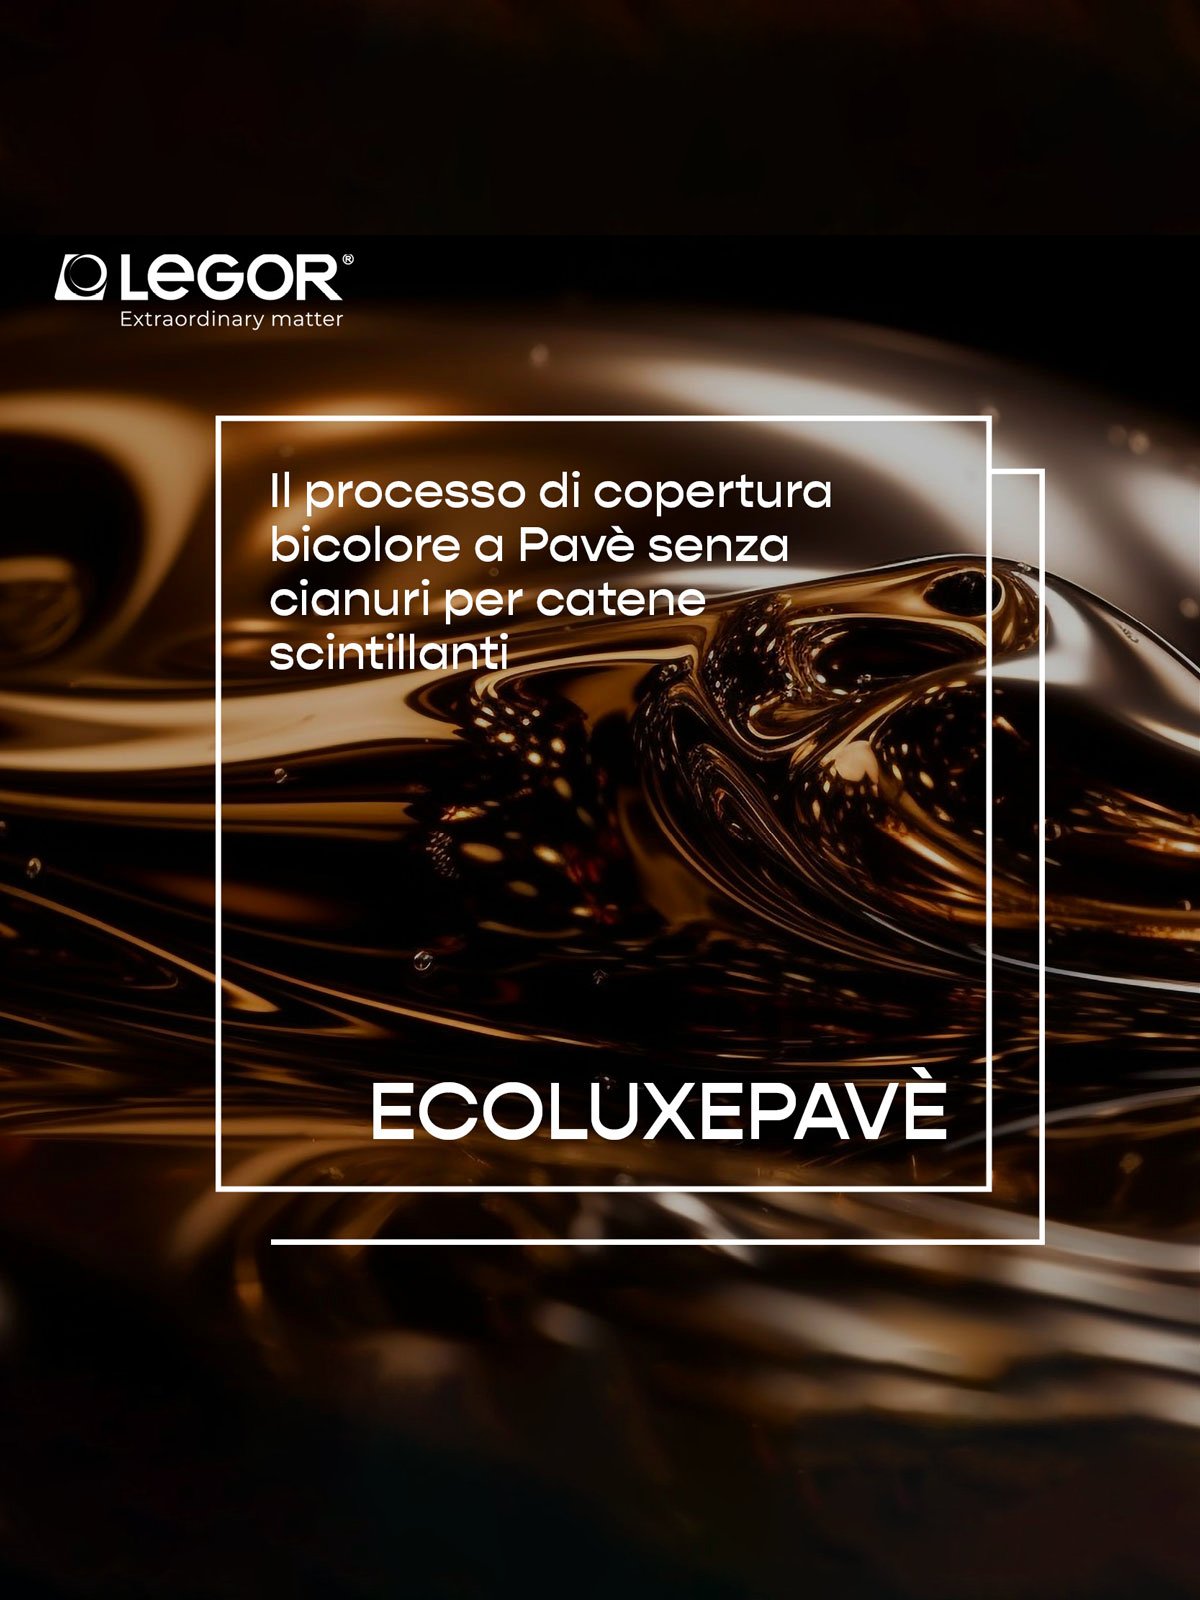 Ecoluxepavé: le nouveau procédé de couverture de Legor ne contient pas de cyanure